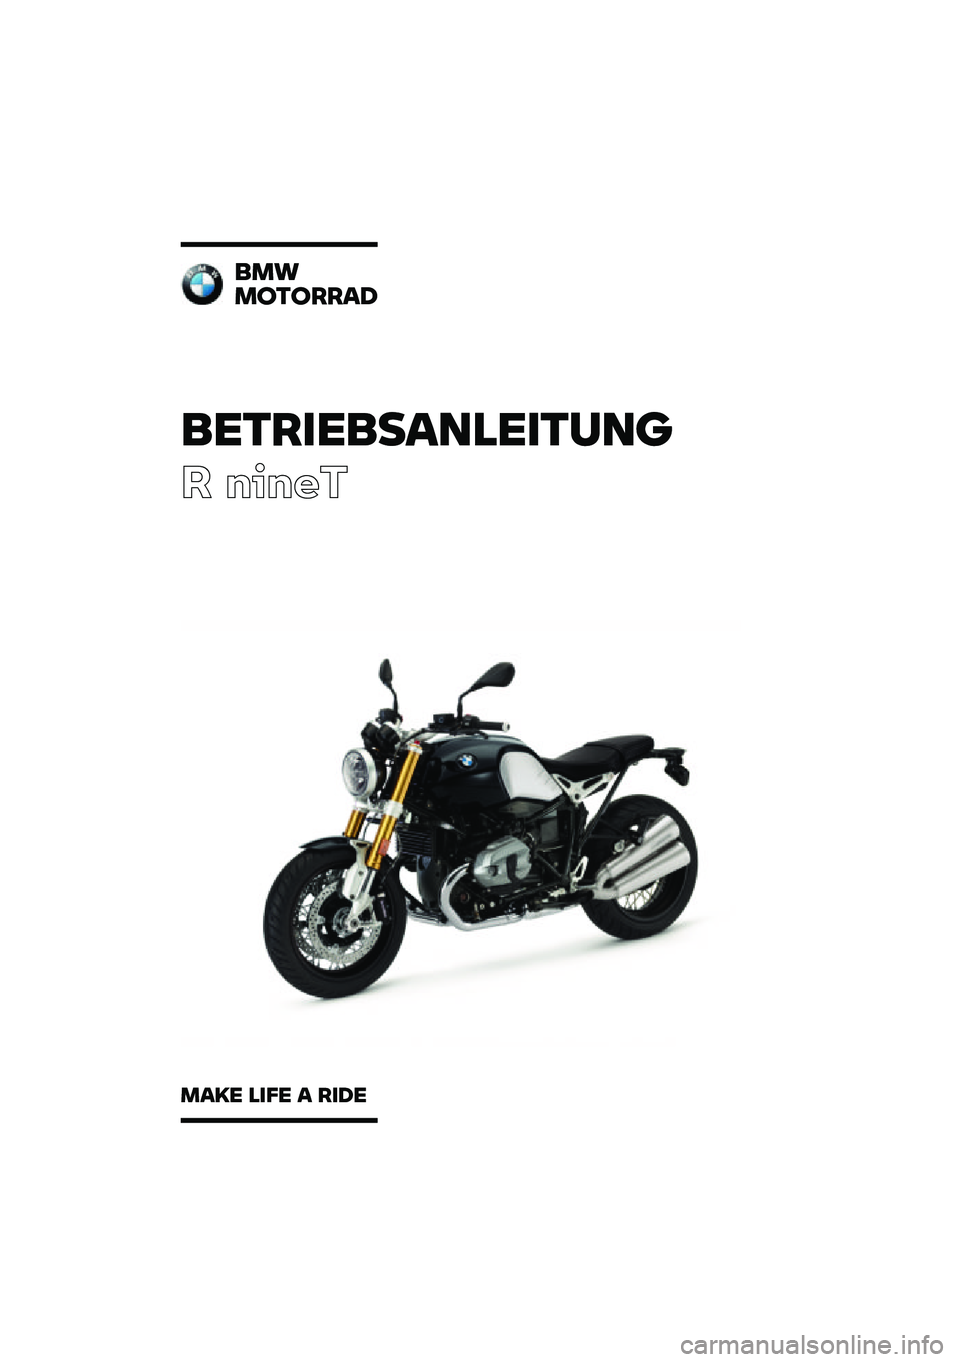 BMW MOTORRAD R NINE T 2020  Betriebsanleitung (in German) ���������\b�	�
�����	�\f
� �����
��
�
�
������\b�
�
�\b�� �
��� �\b ���� 